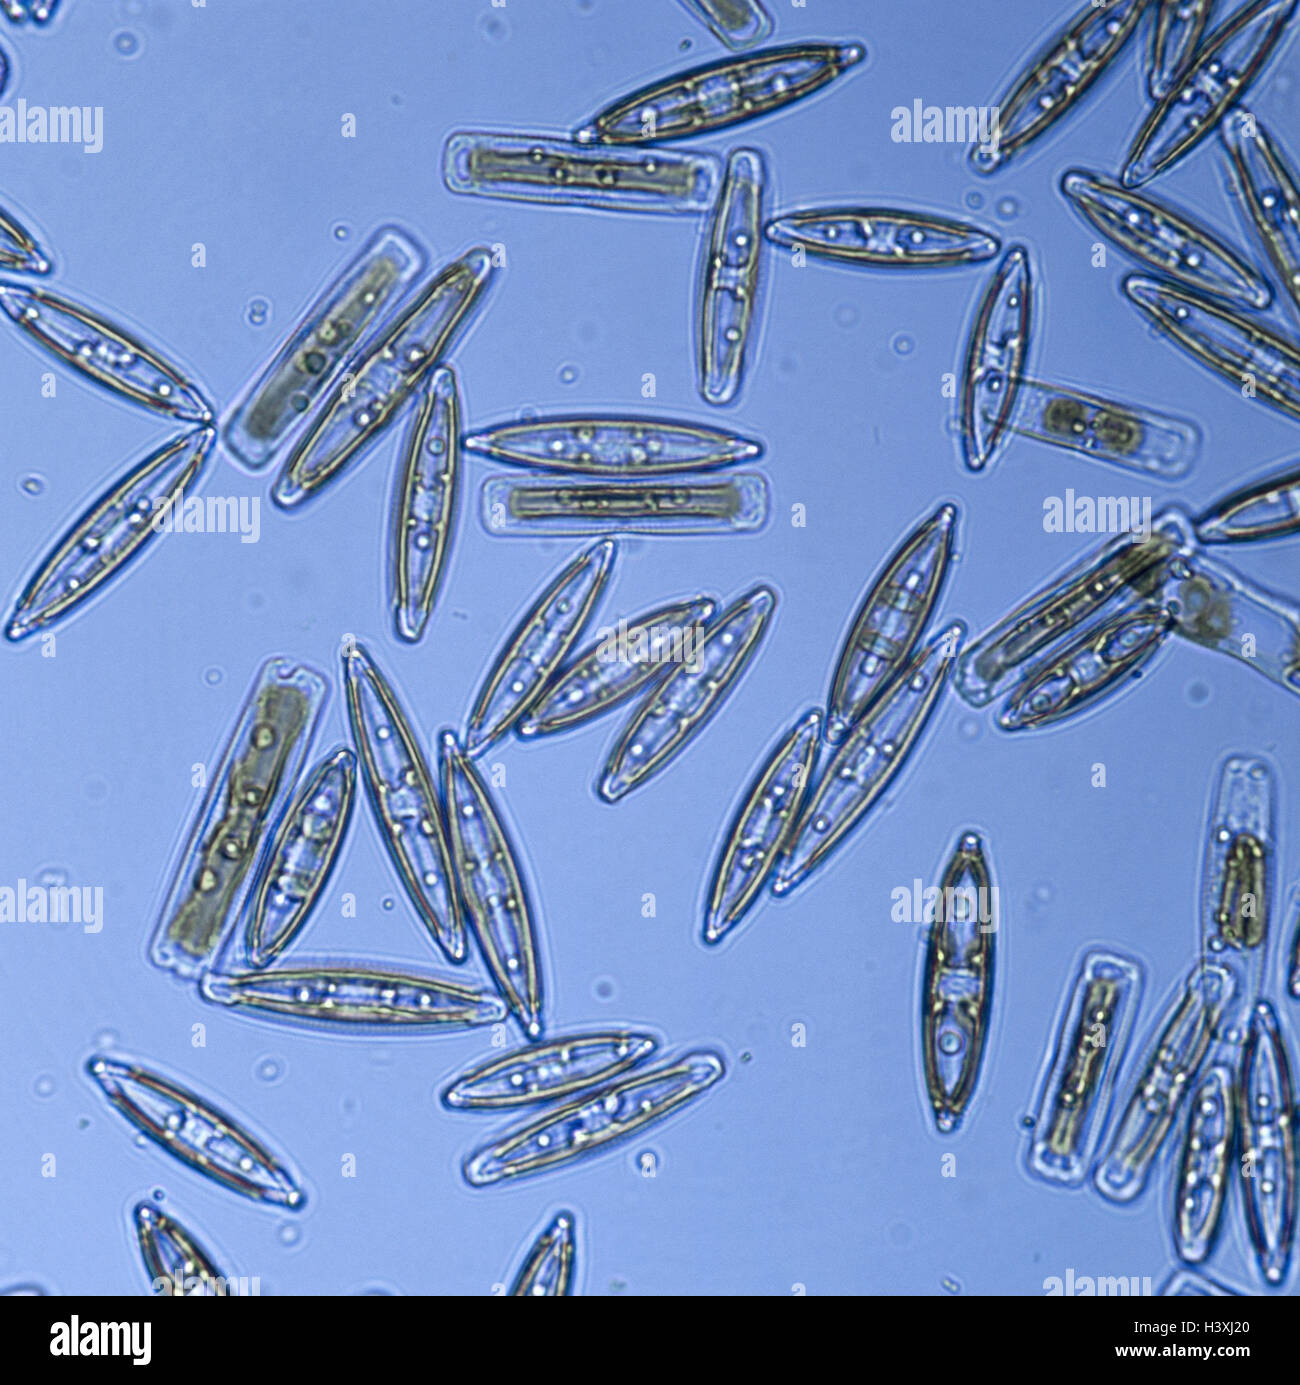 L'enregistrement de microscope, algues, plantes, galets, algues, à cellule unique, protozoon Diatomeen, Diatomeae, Bacillariophycées Banque D'Images